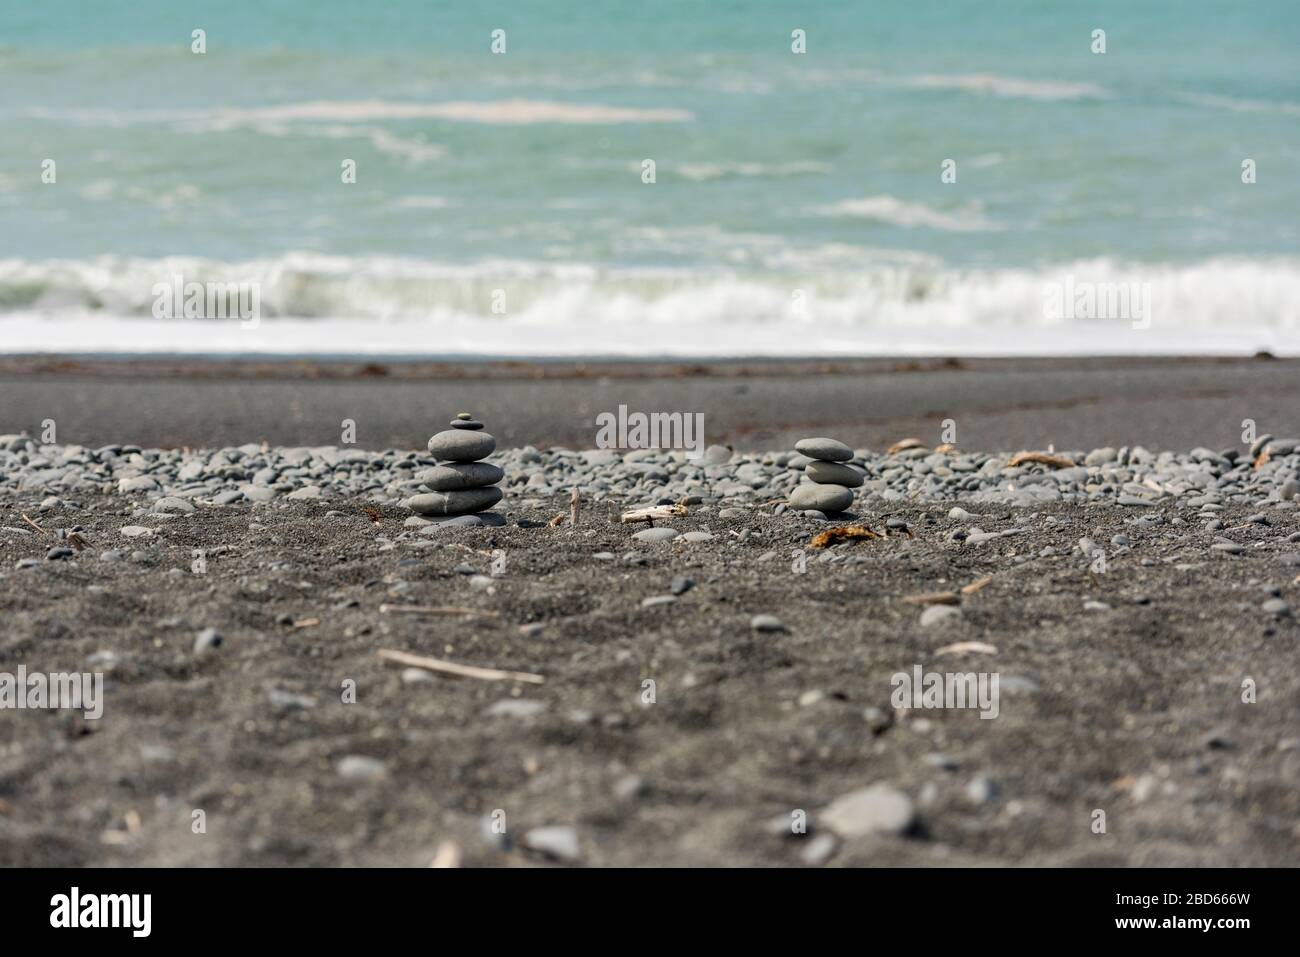 Des pierres se sont enroulées sur la plage avec vue sur l'océan Pacifique Sud depuis la plage de galets de Kaikoura en Nouvelle-Zélande Banque D'Images